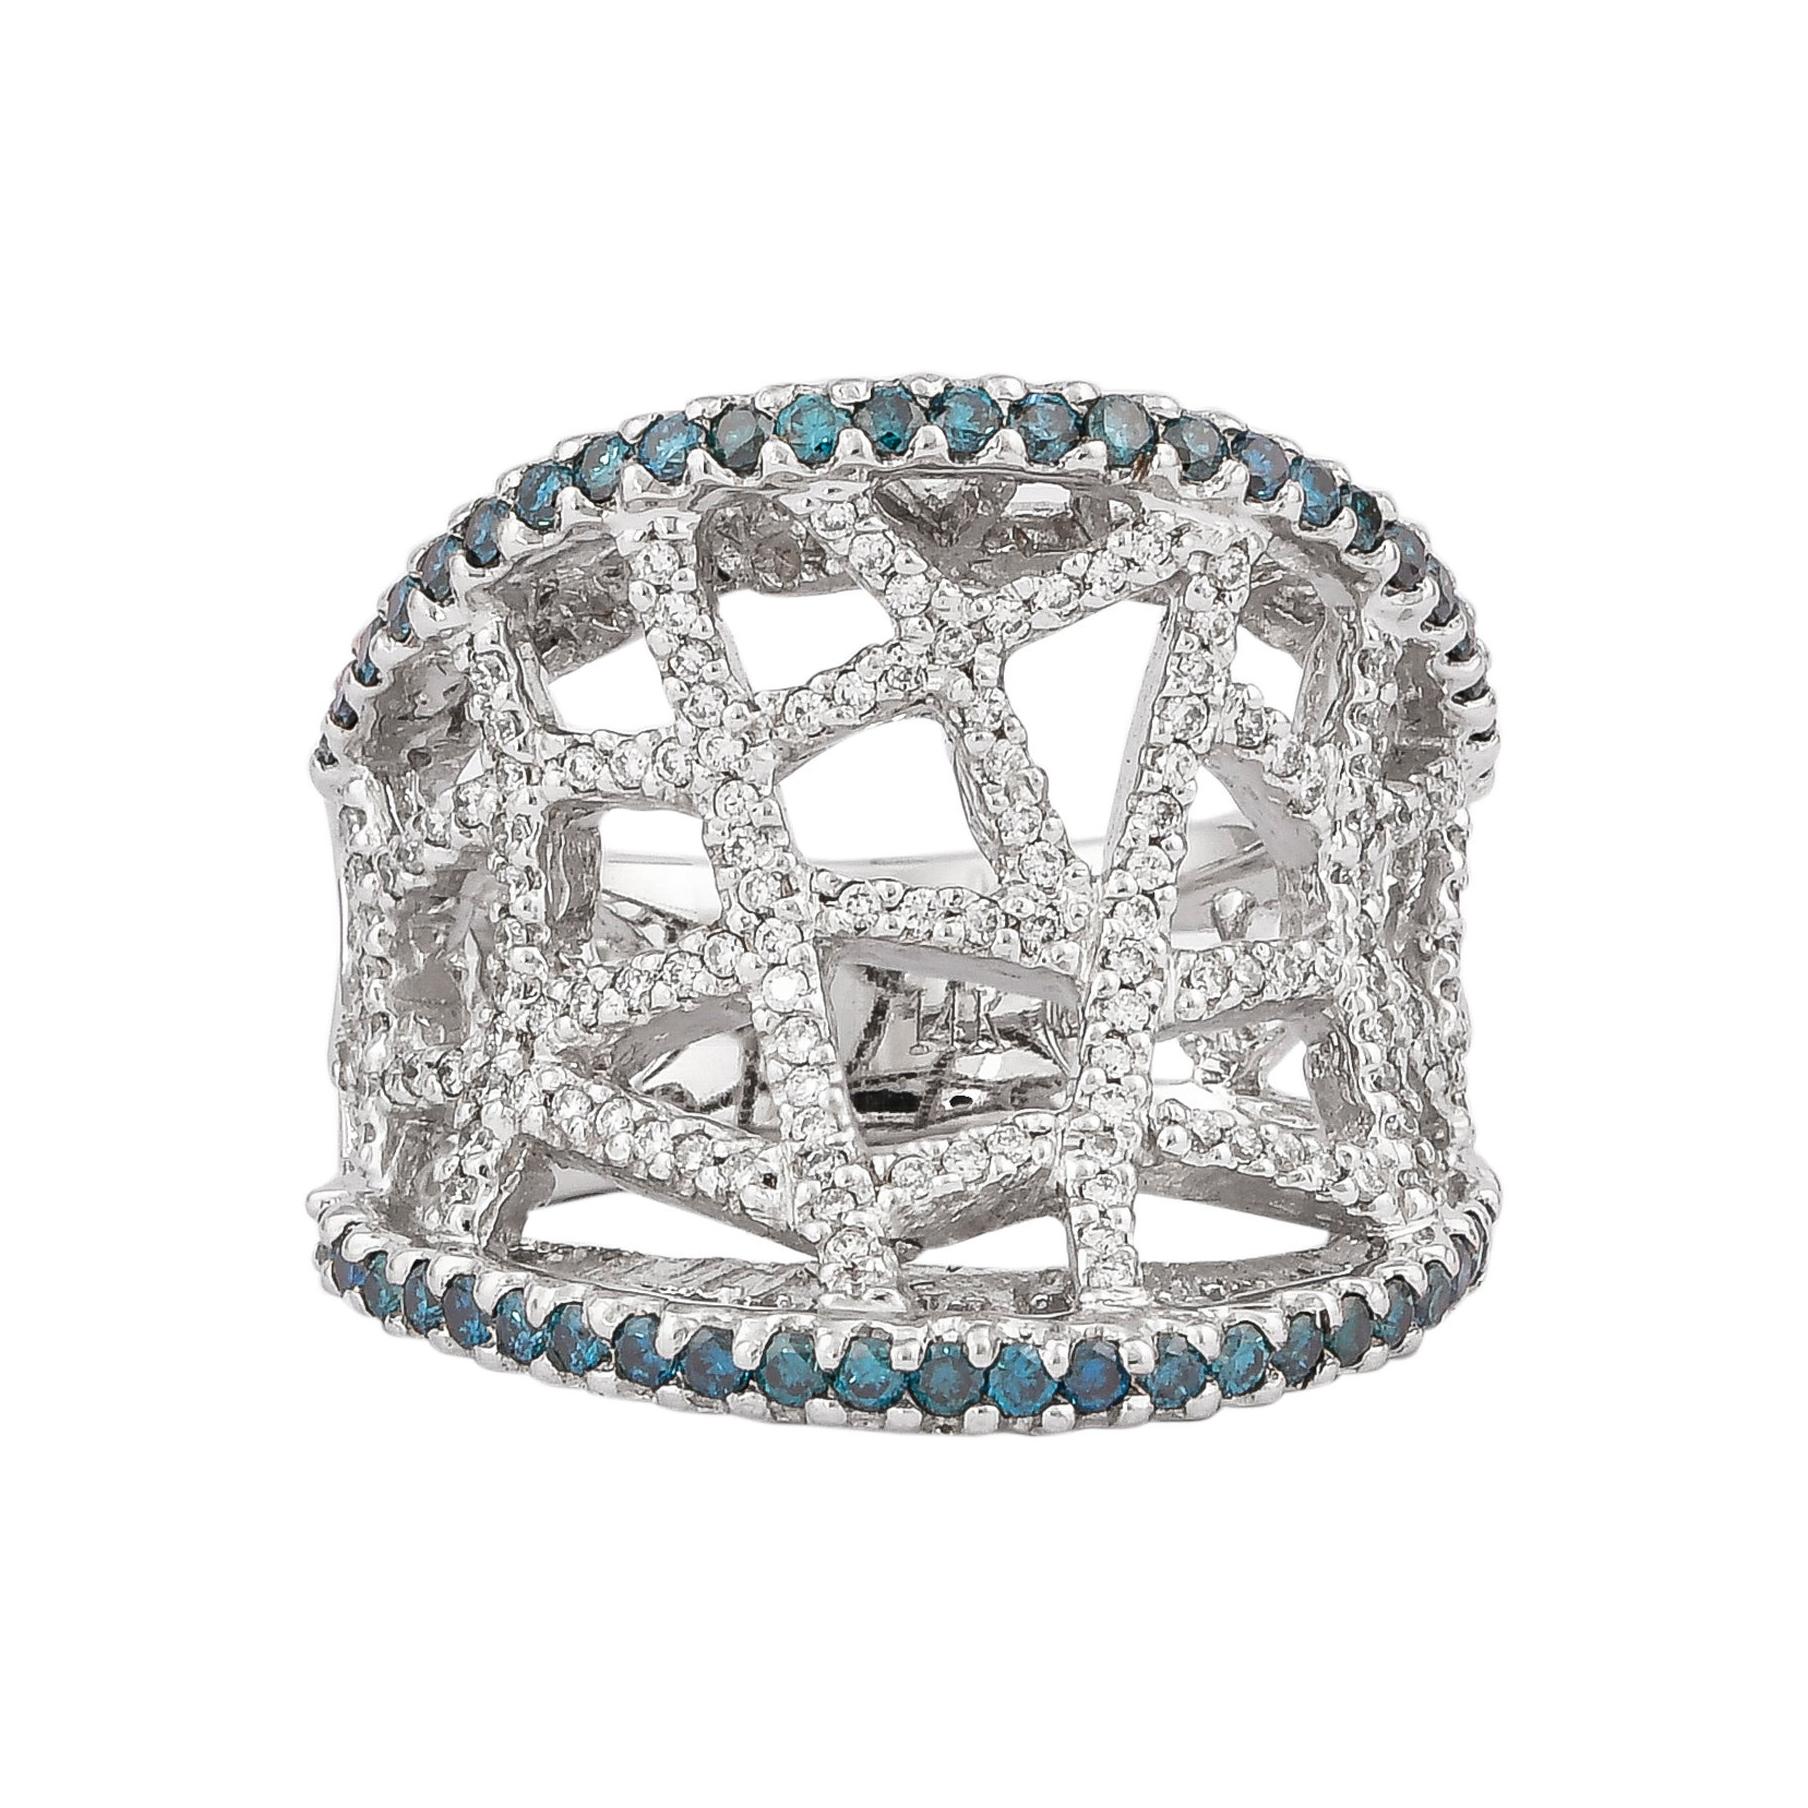 1.8 Carat Blue & White Diamond Ring in 14 Karat White Gold